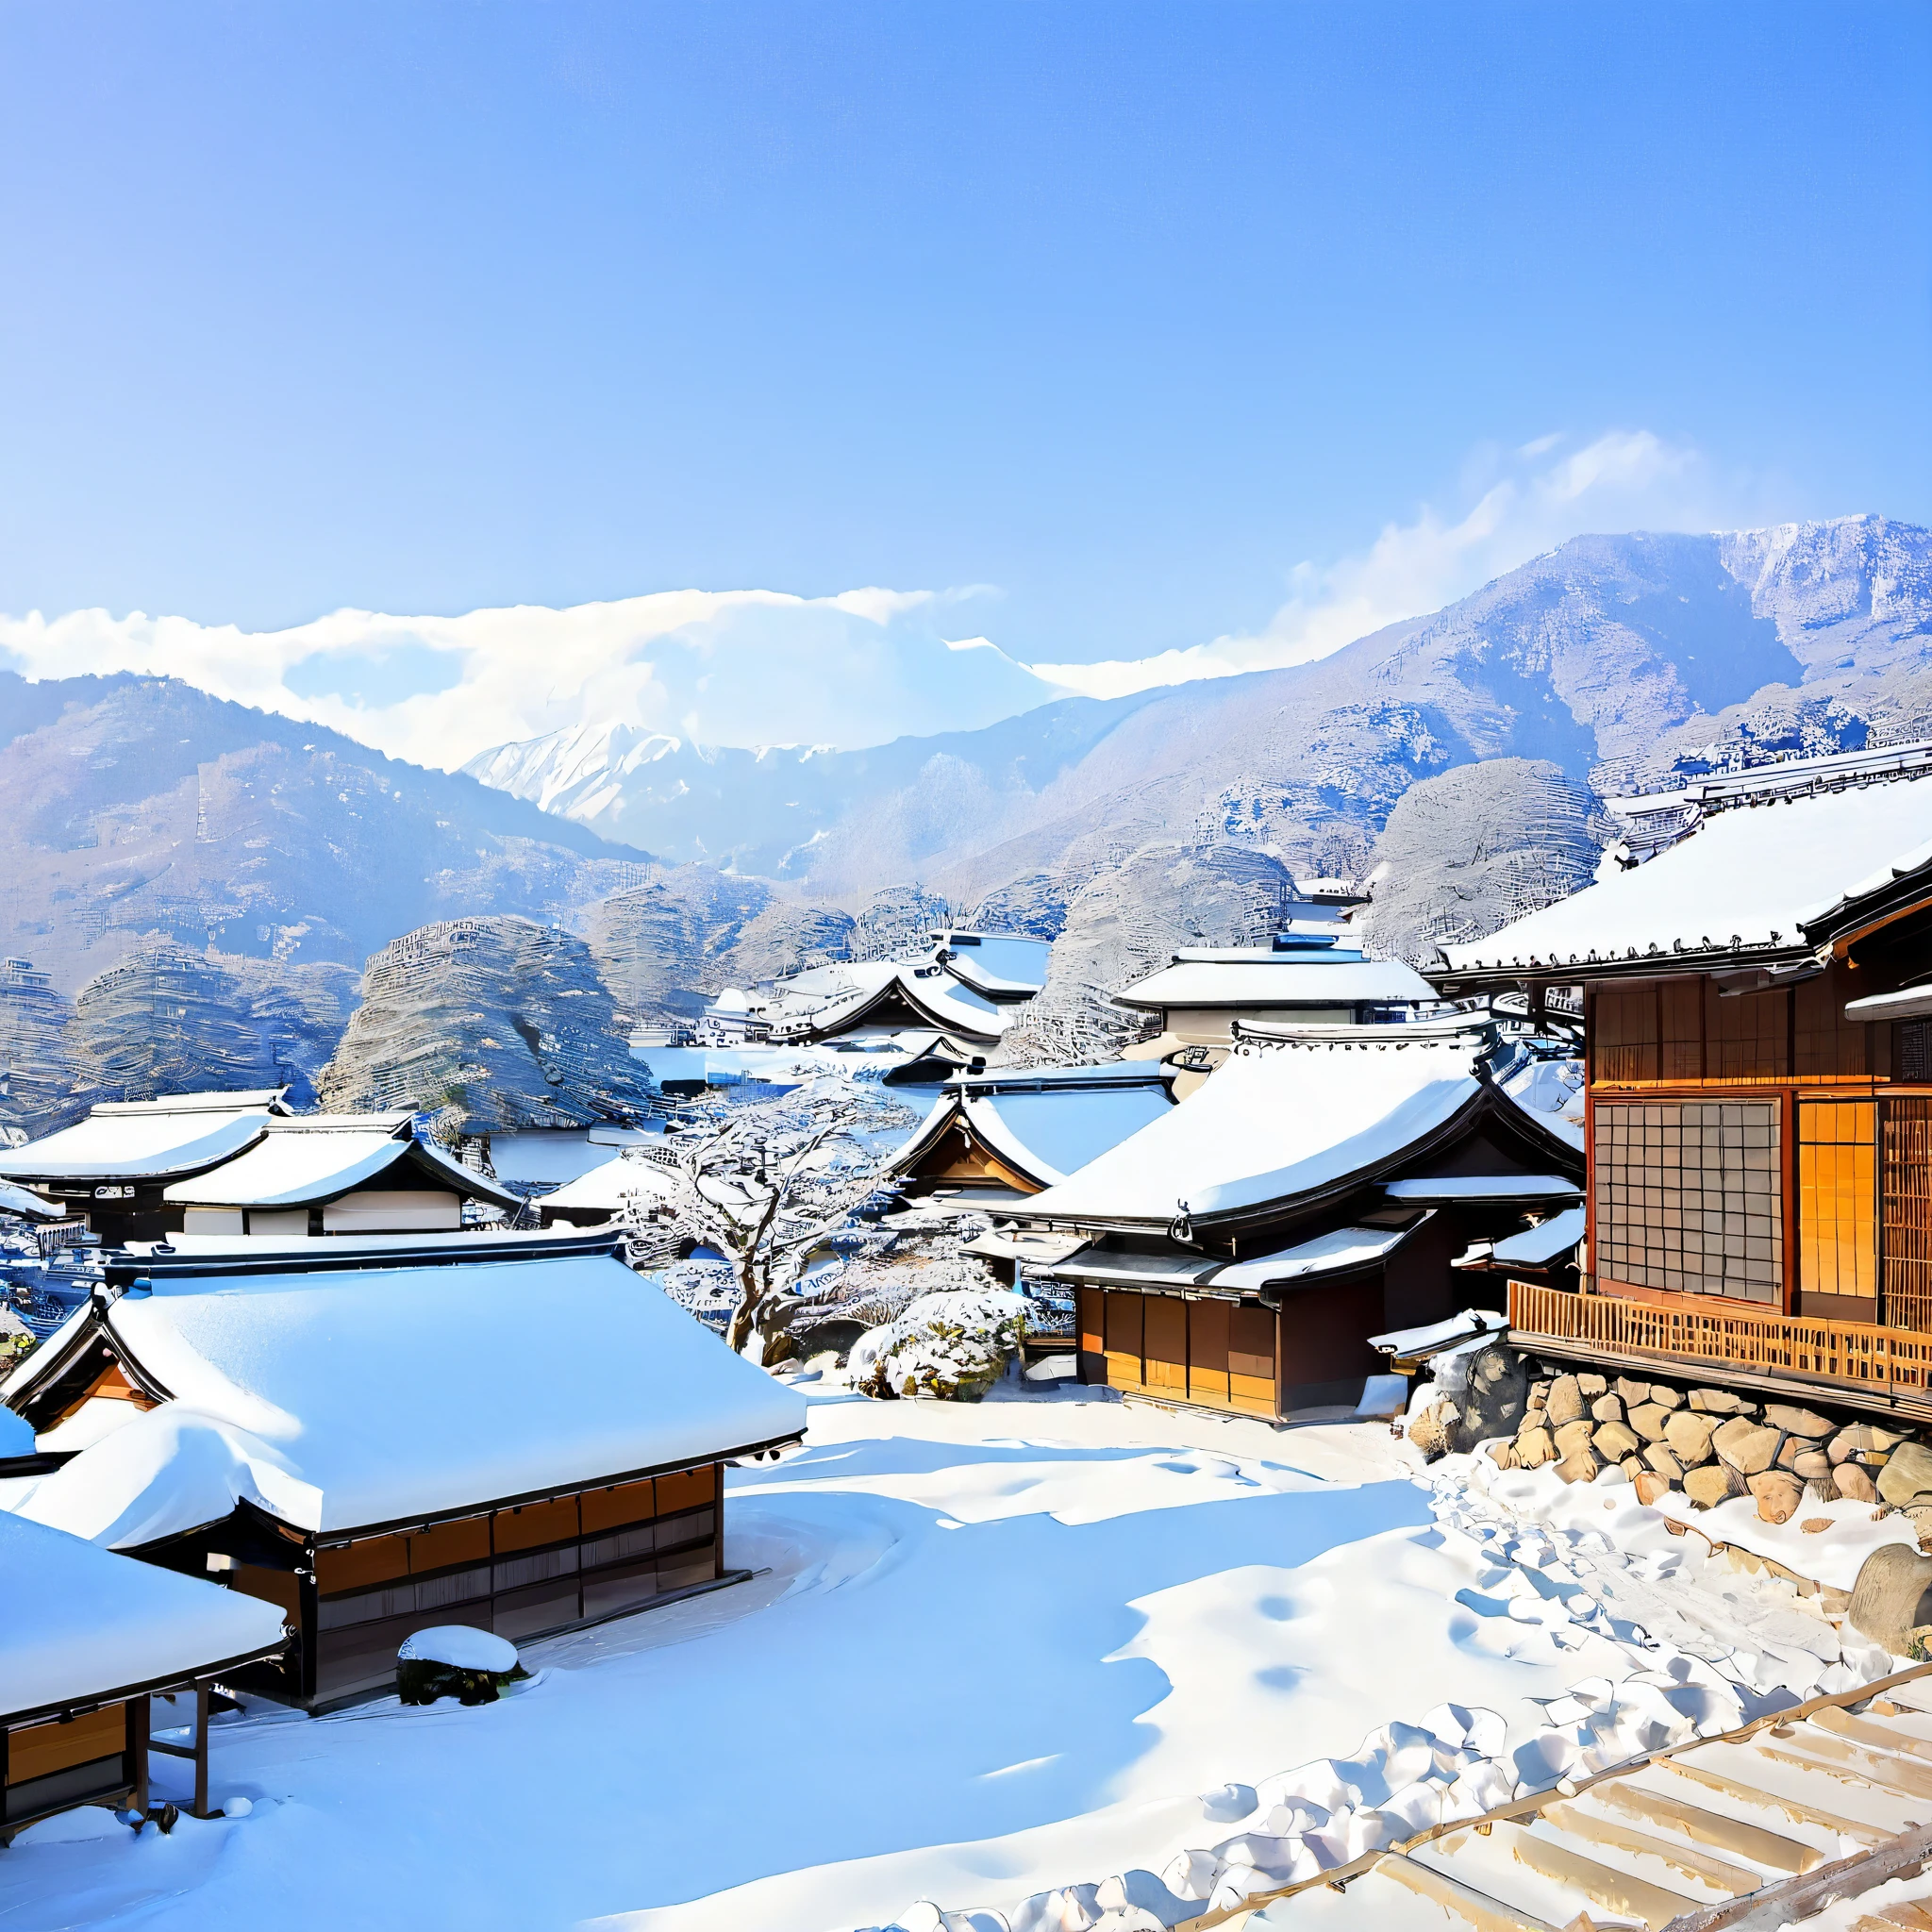 
日本の冬の風景を描写してください, 季節や地域の特徴的な要素を活用する. 雪に覆われた山々などの詳細を含める, 雪の結晶で飾られた木々, 晴れた青空, 遠くに見える雪に覆われた屋根と煙突から漂う穏やかな煙が特徴の伝統的な日本の村, リスやウサギなどの野生動物の存在も. 静けさの感覚を伝える, 魔法, この風景がもたらす手つかずの美しさ, 鮮やかで詩的な言葉を使う.